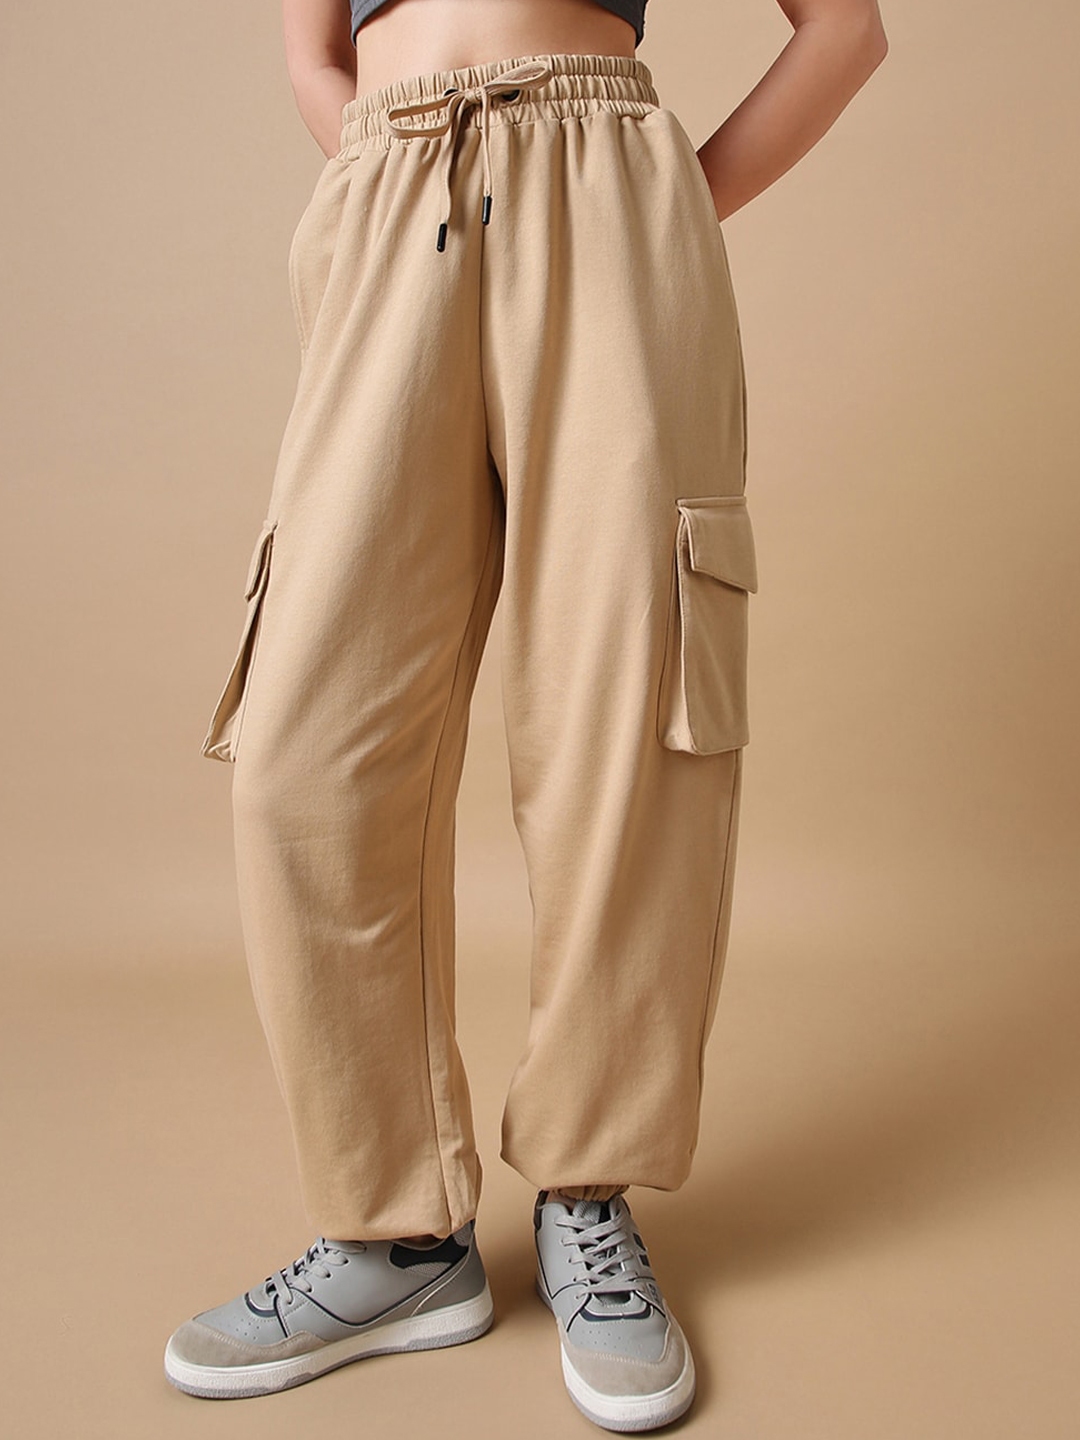 Buy Women's Brown Cargo Pants Online at Bewakoof